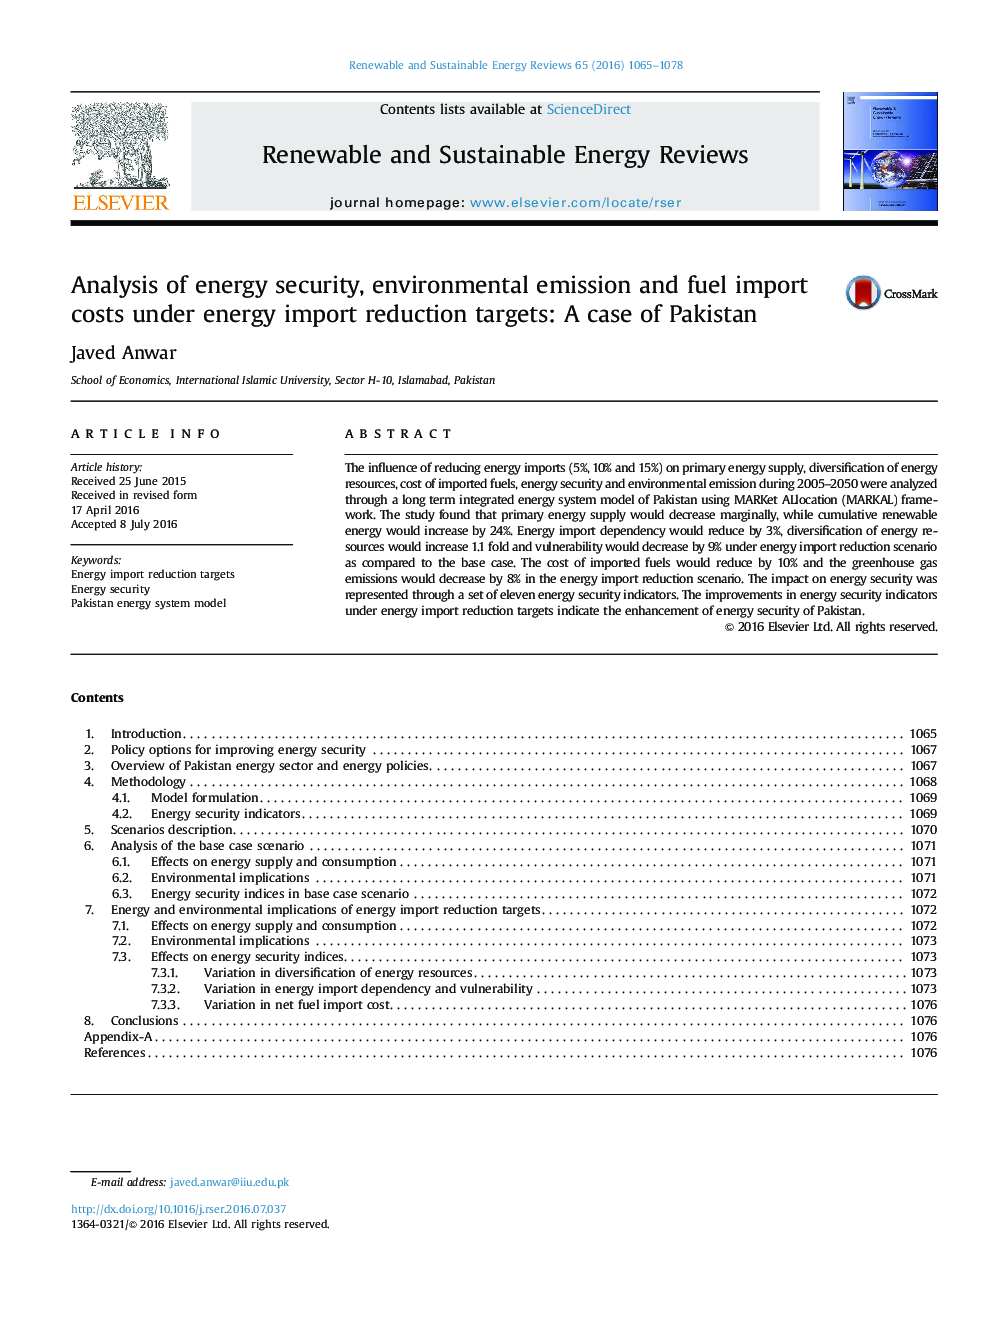 تجزیه و تحلیل امنیت انرژی، هزینه های زیست محیطی و واردات مواد سوخت تحت اهداف کاهش واردات انرژی: مورد پاکستان 